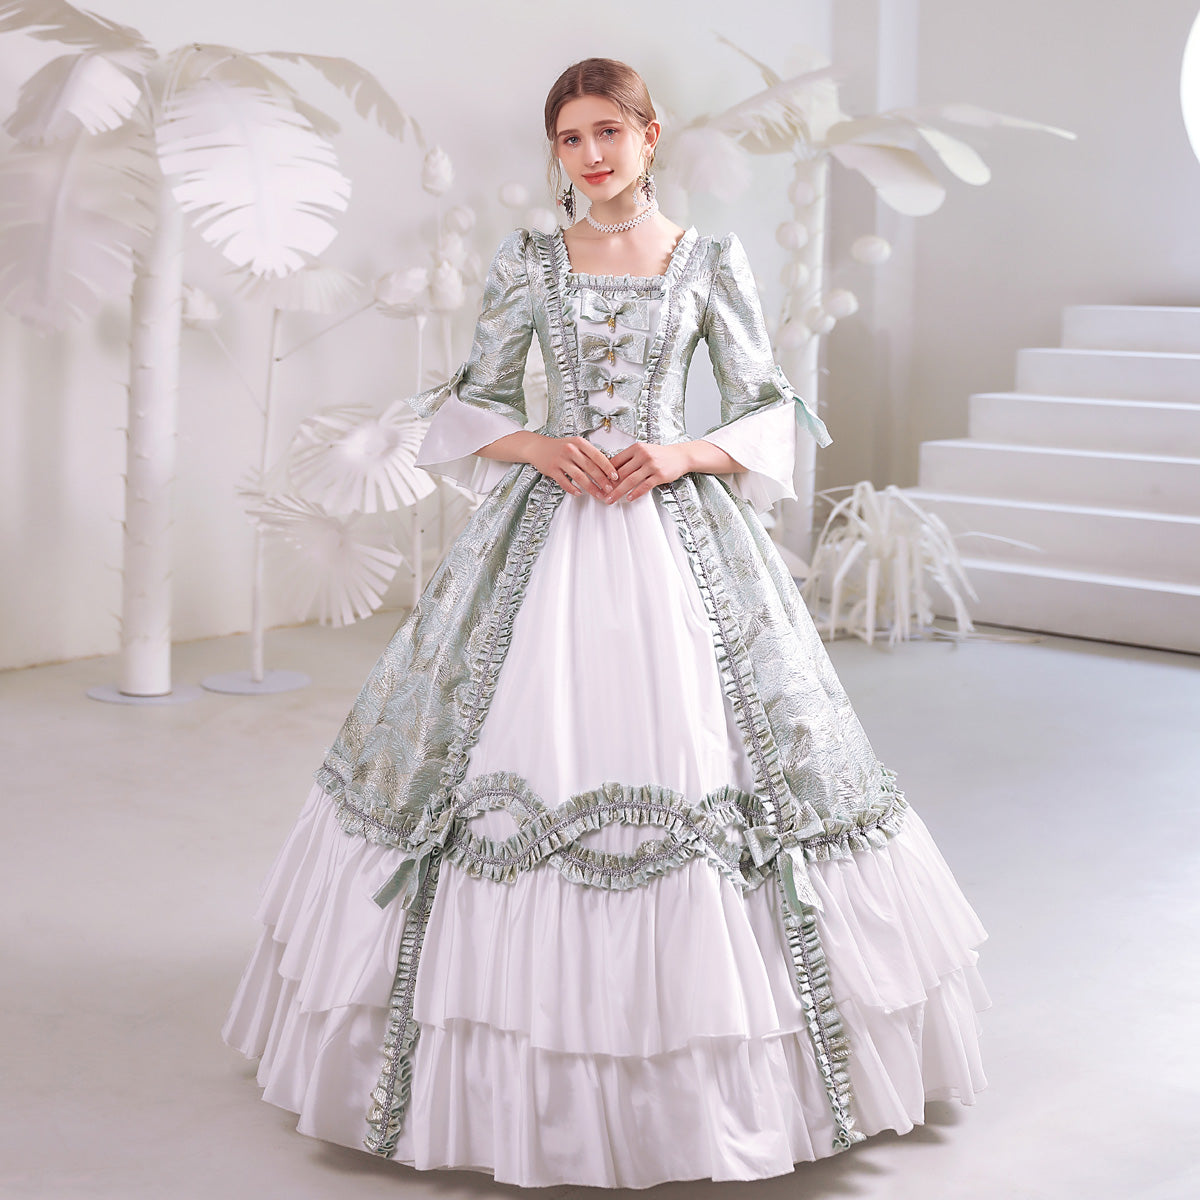 Jacquard Renaissance Victorian Prairie Dress Women Ball Gown Theater Costume